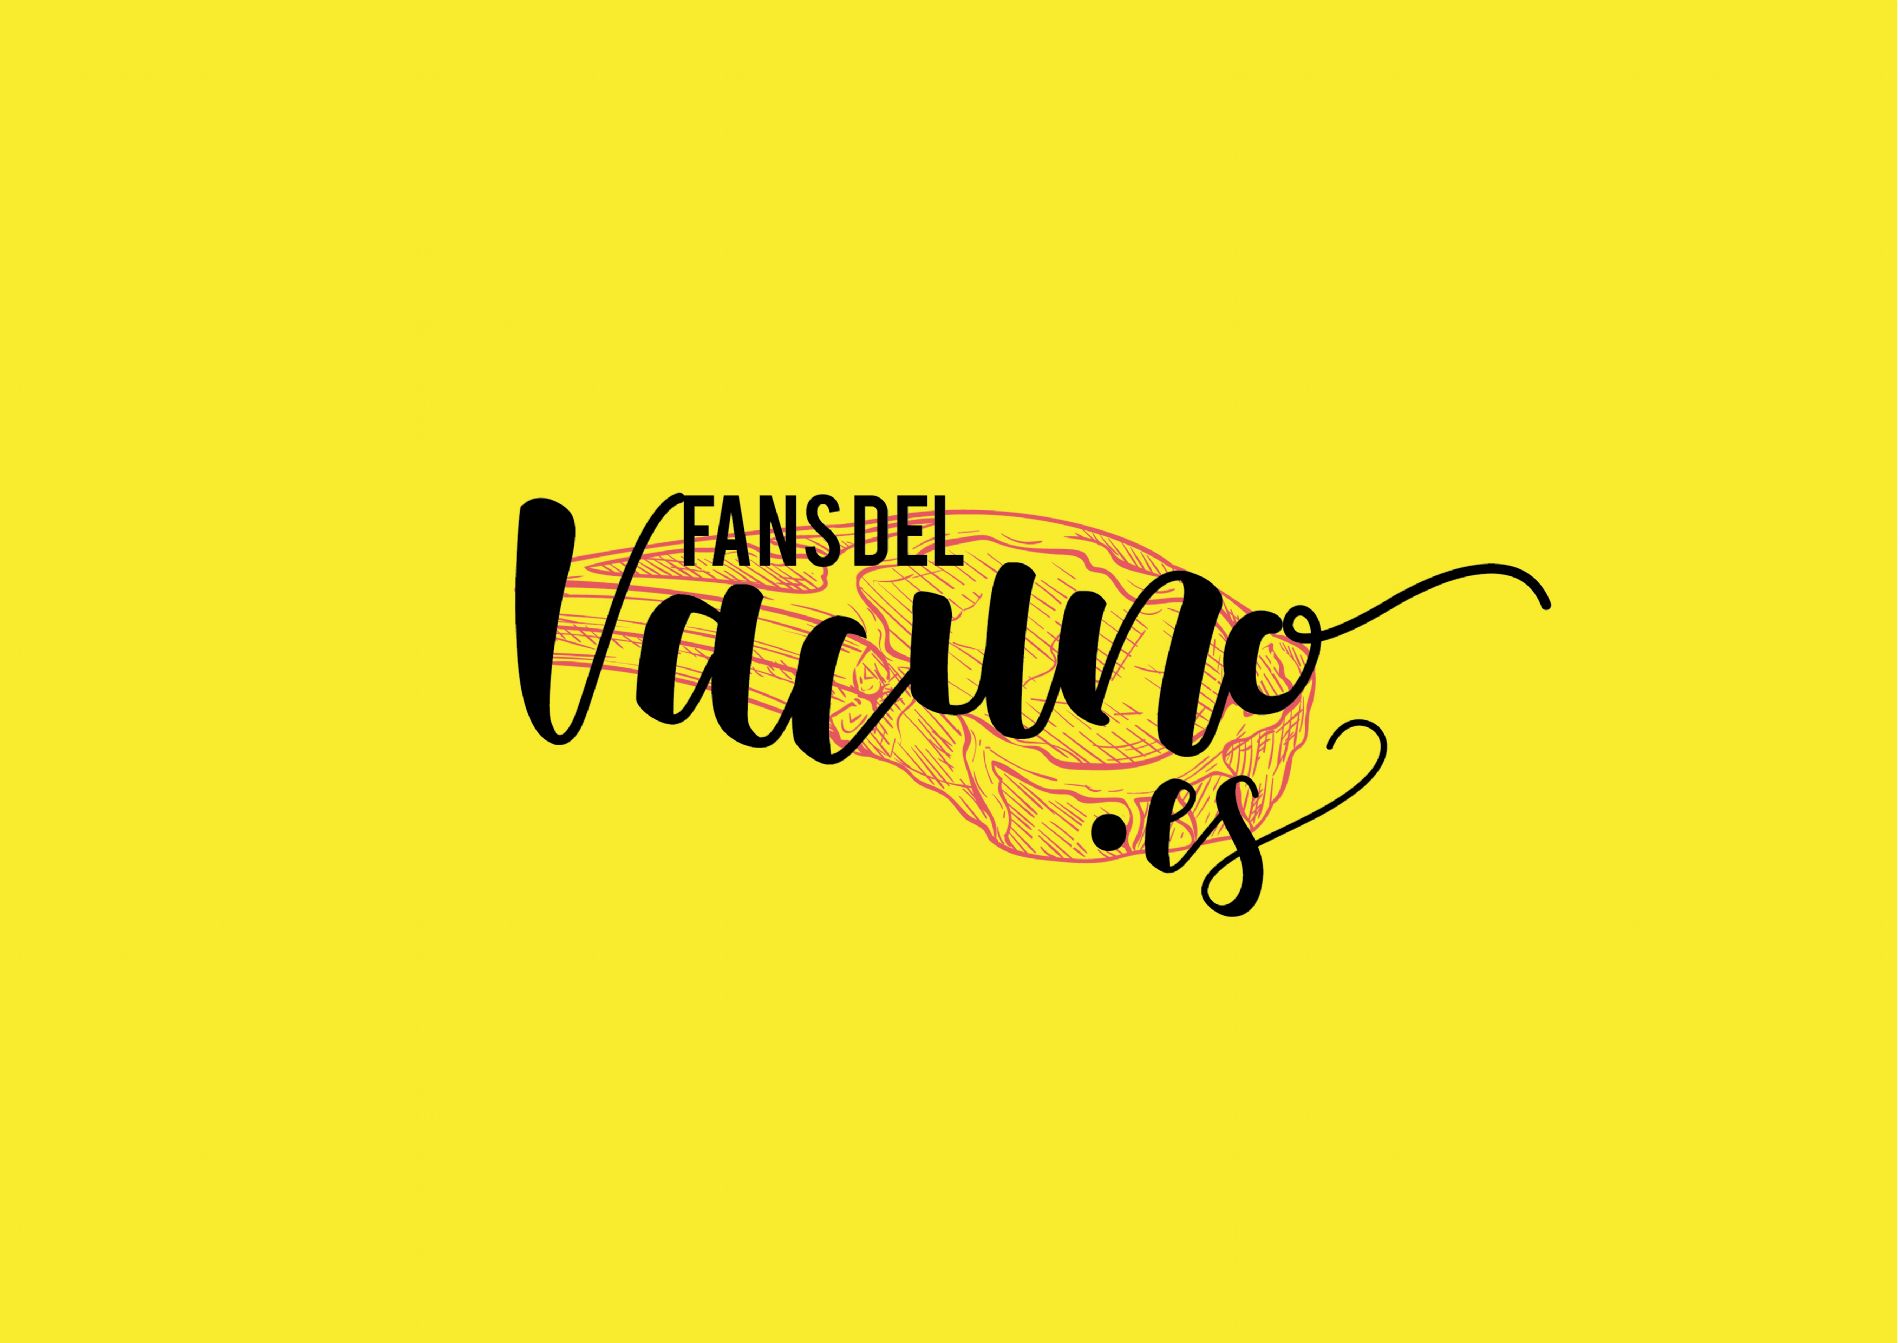 Logo de la campaa #FansdelVacuno que acaba de lanzar la Organizacin Interprofesional